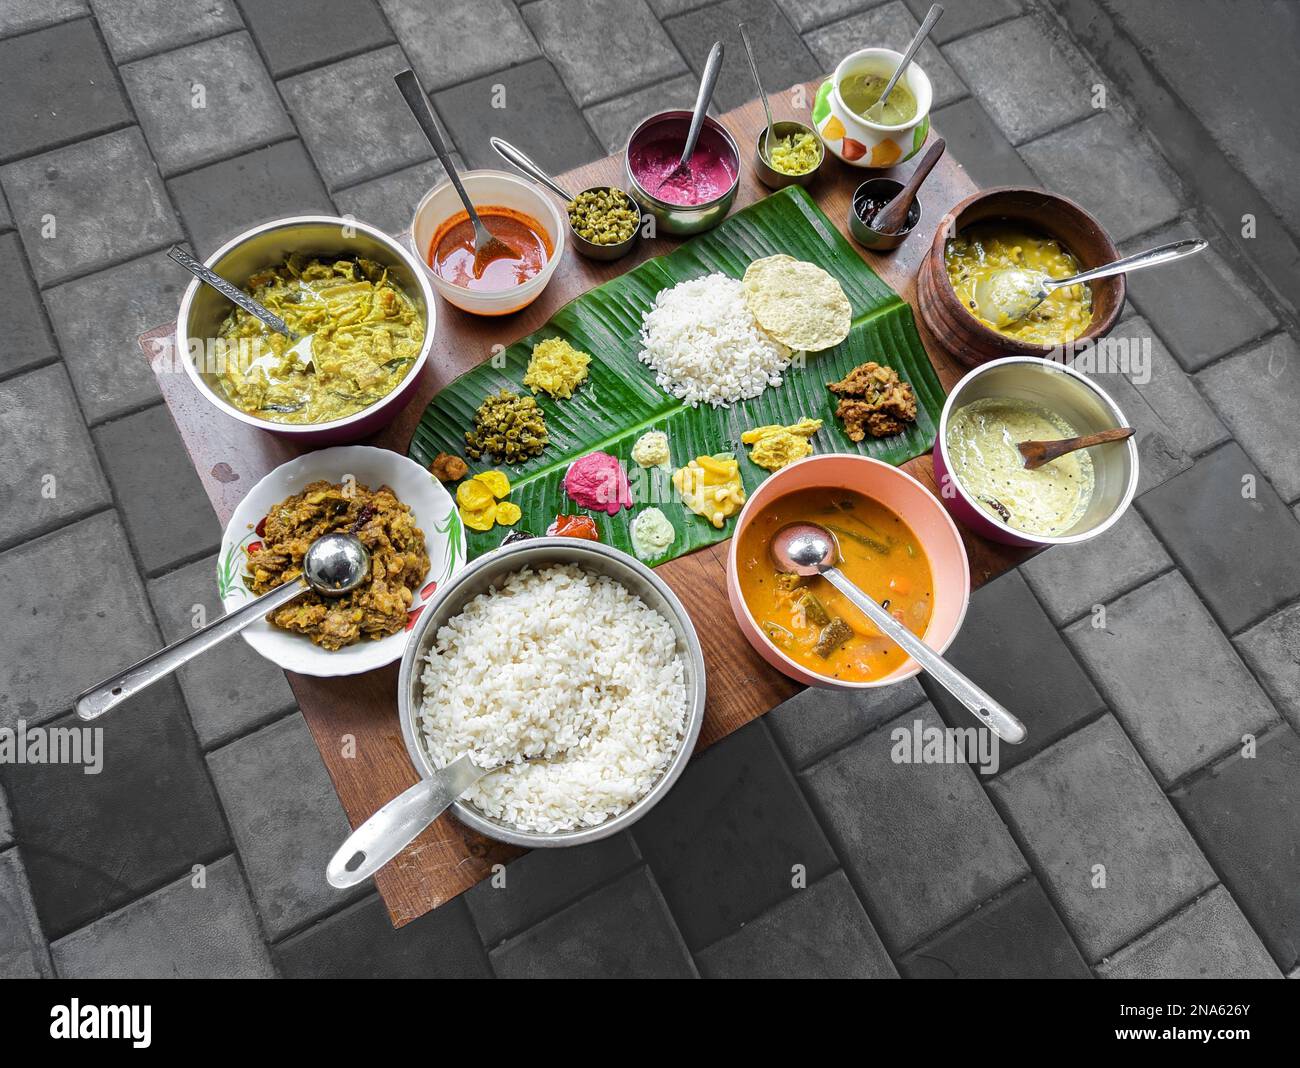 assiette de cuisine traditionnelle du sud de l'inde avec du riz dans une feuille de banane et une variété de plats disposés dans une table Banque D'Images